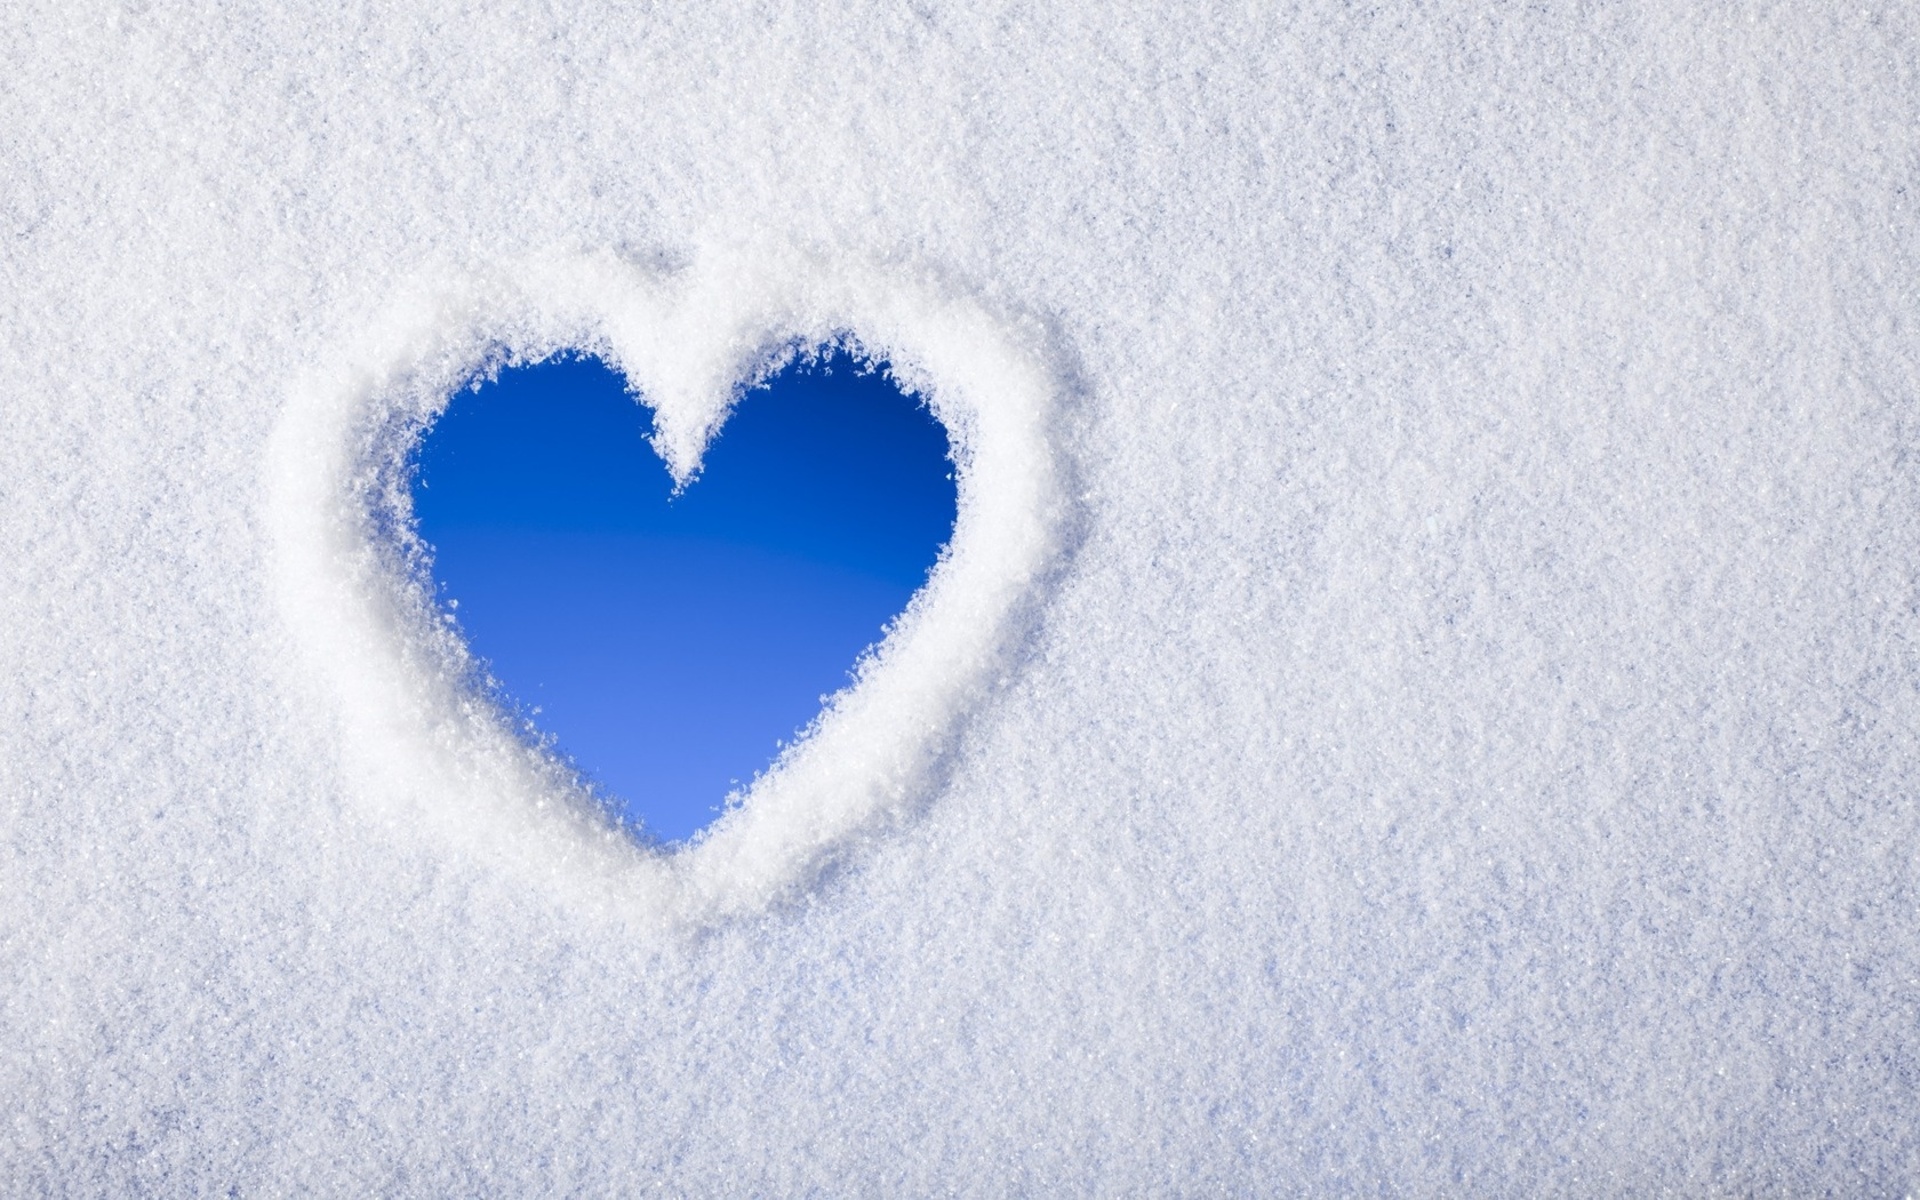 Snow Heart877511163 - Snow Heart - Snow, Hearts, Heart